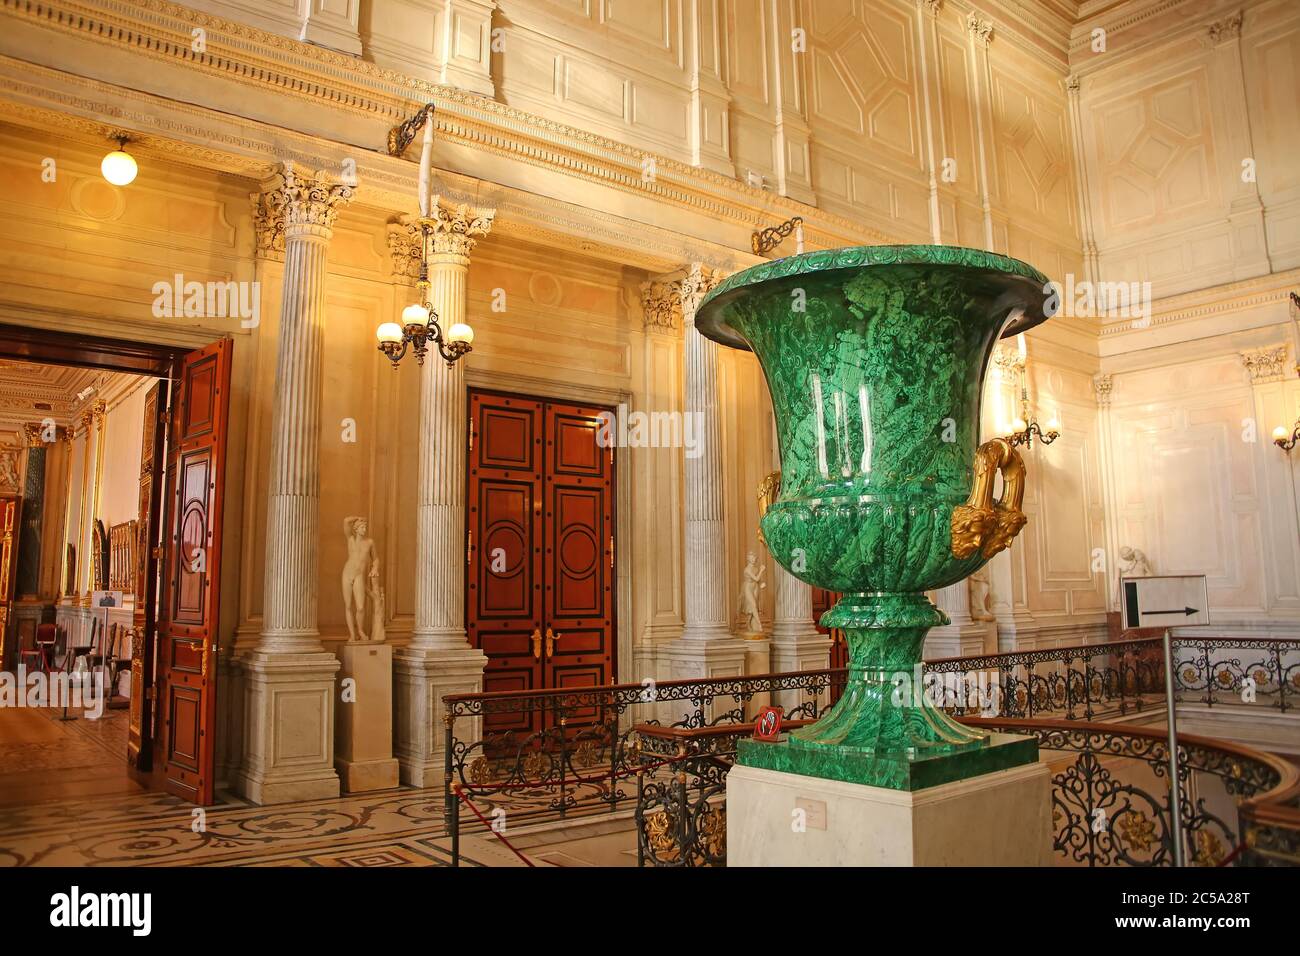 Grand vase vert en jade au sommet de l'escalier du Conseil, dans le musée de l'Ermitage, Saint-Pétersbourg, Russie. Banque D'Images